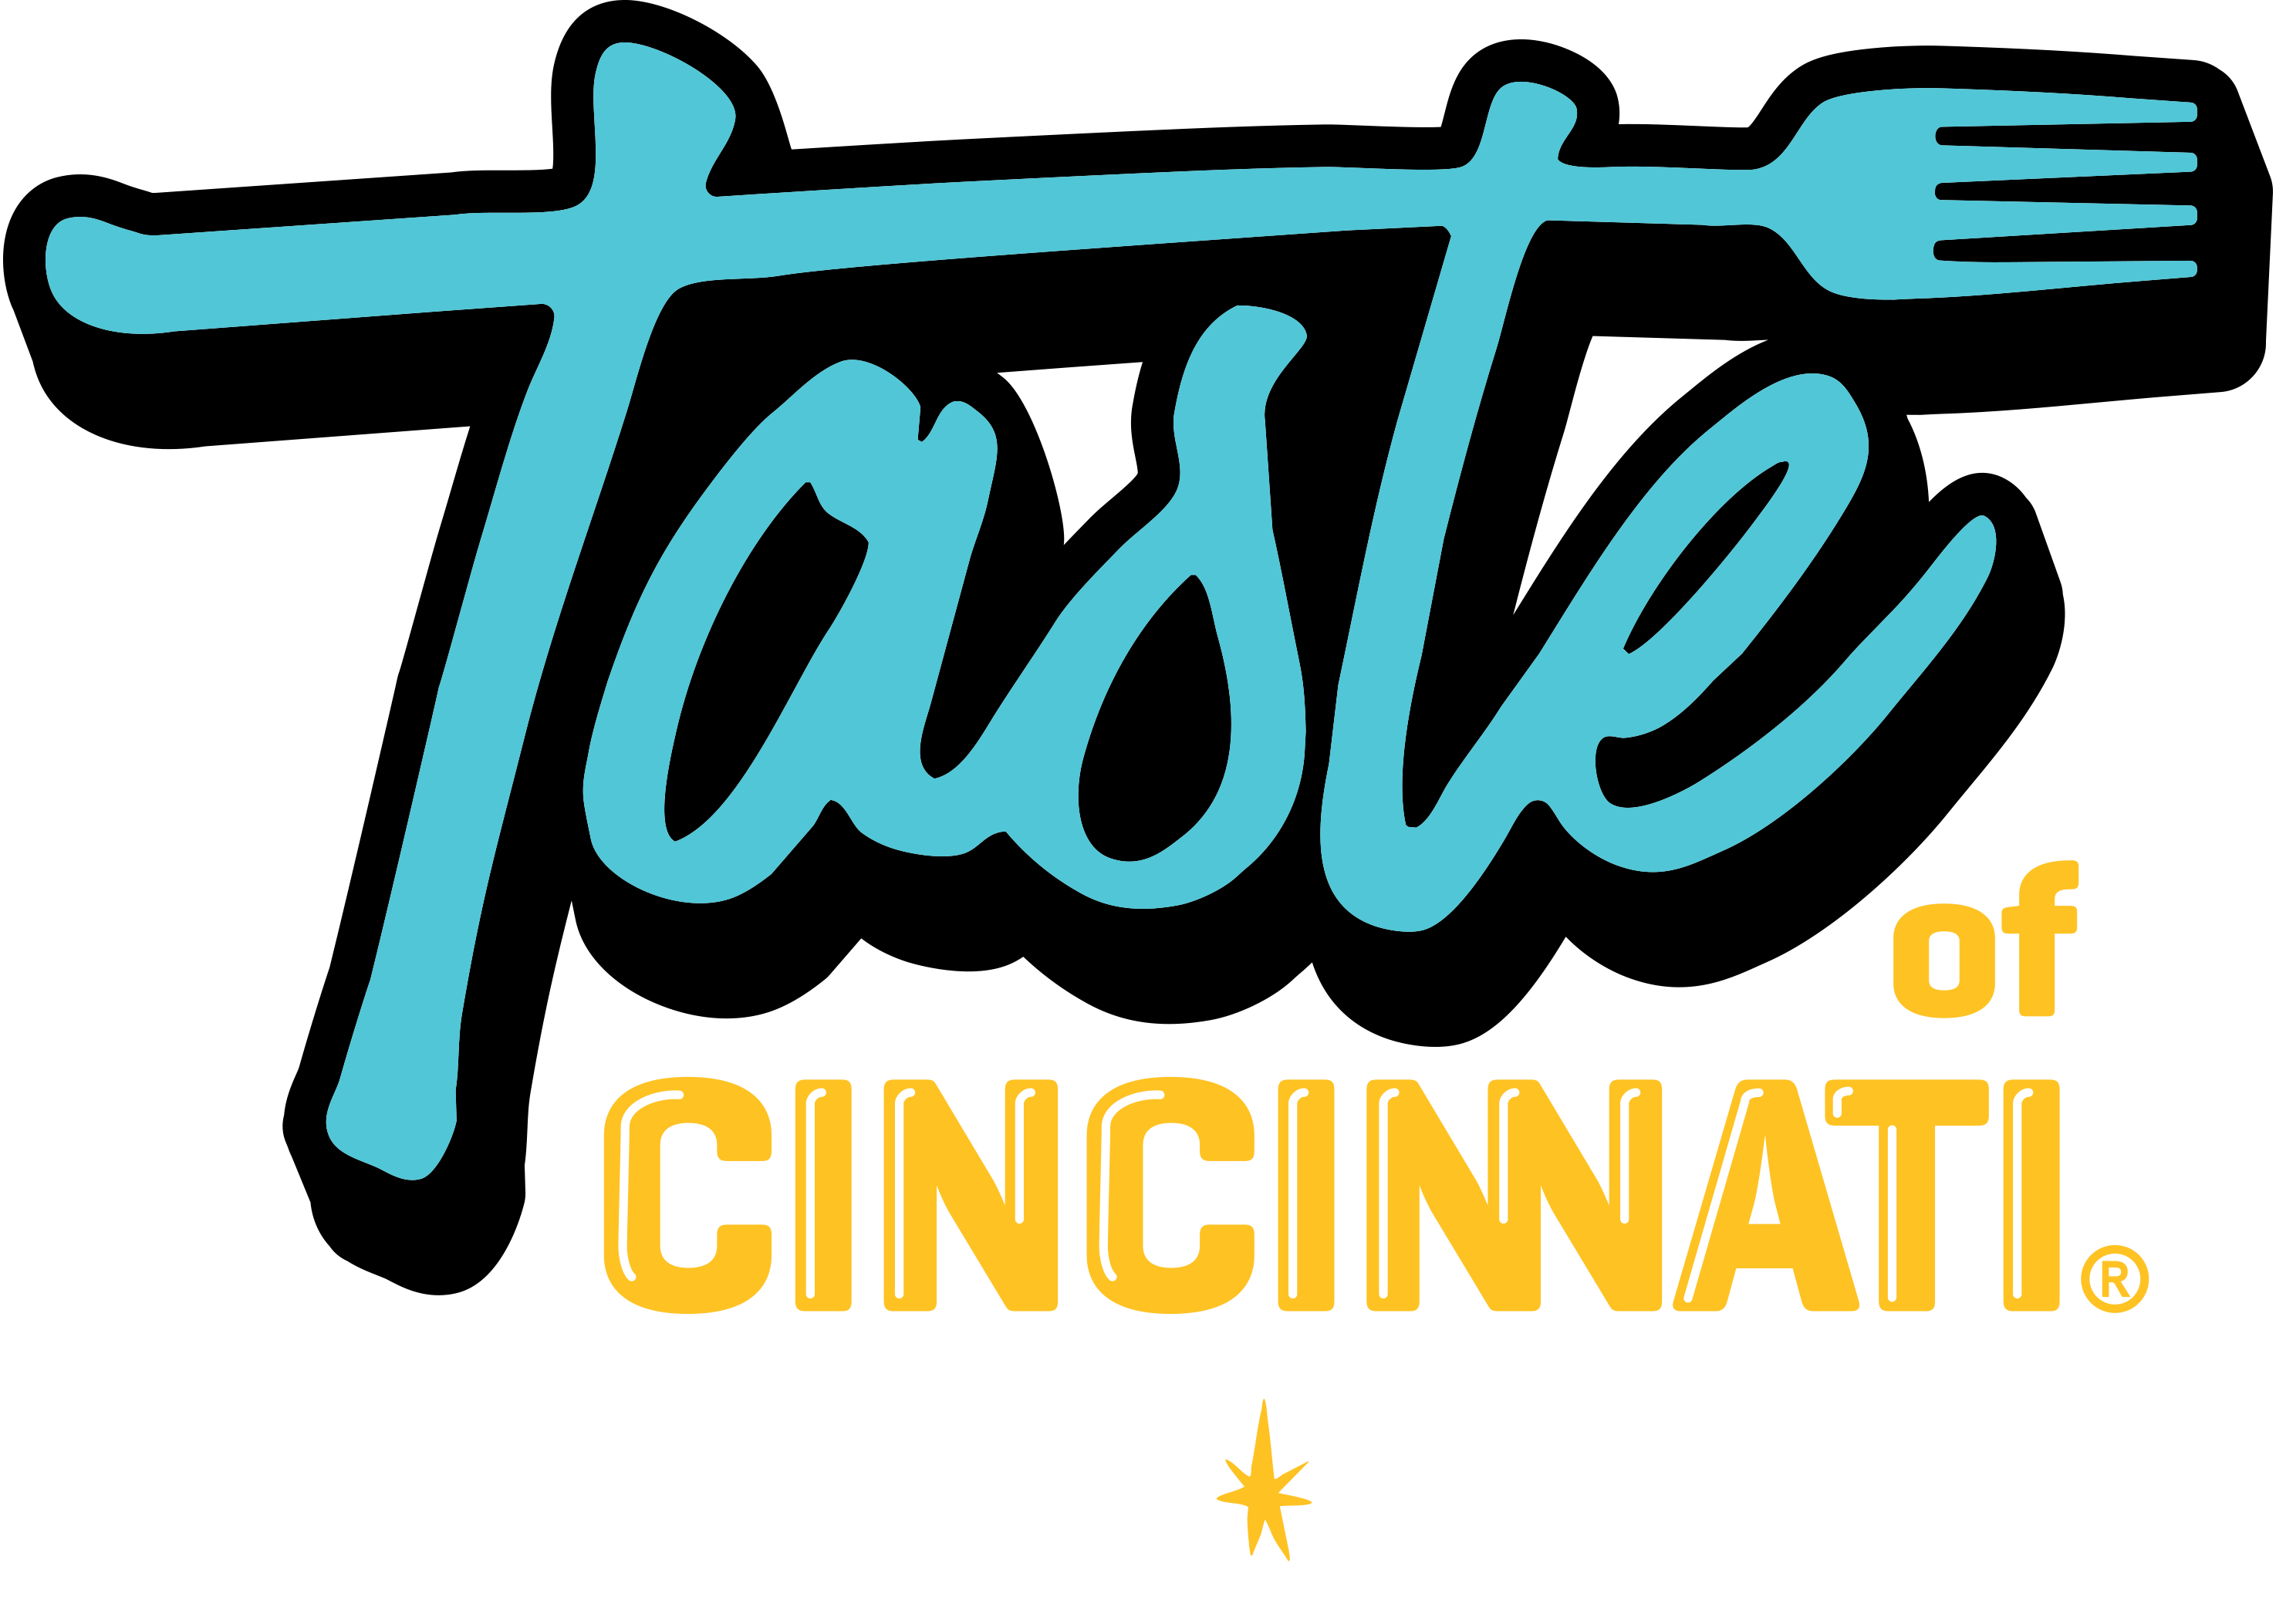 Taste of Cincinnati, Produced by Cincinnati USA Regional Chamber, Presented by Kroger